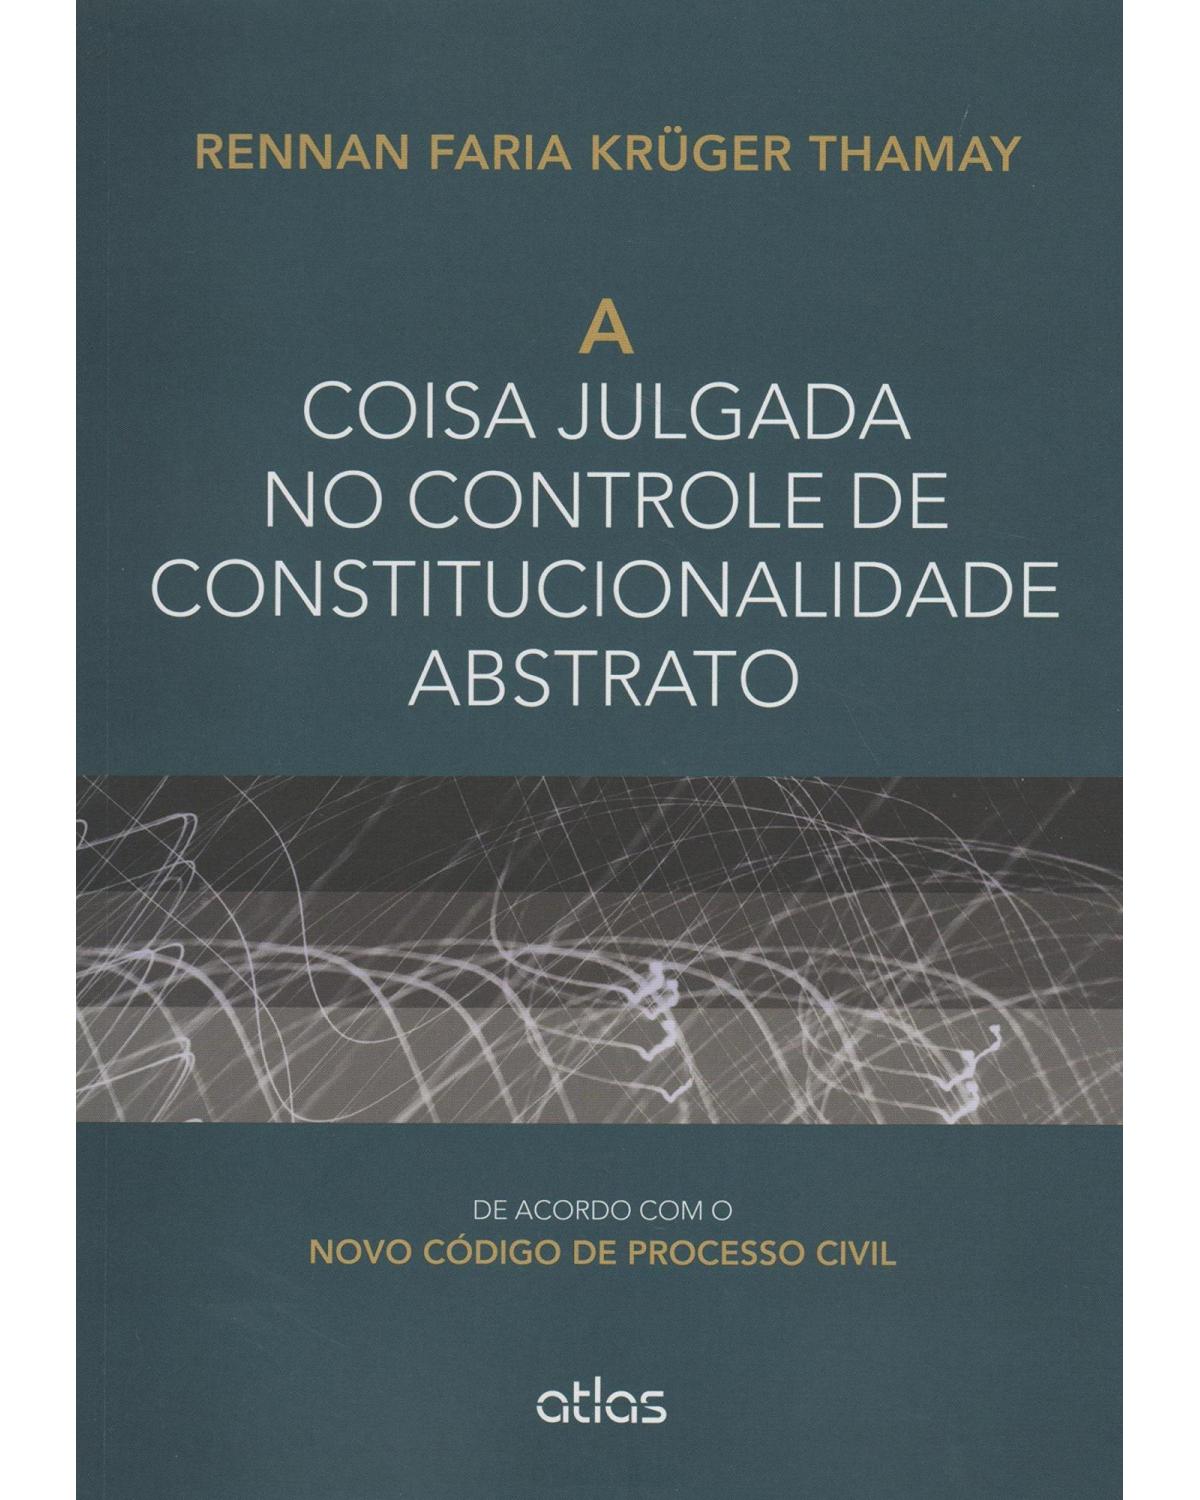 A coisa julgada no controle de constitucionalidade abstrato - De acordo com o novo código de processo civil - 1ª Edição | 2015